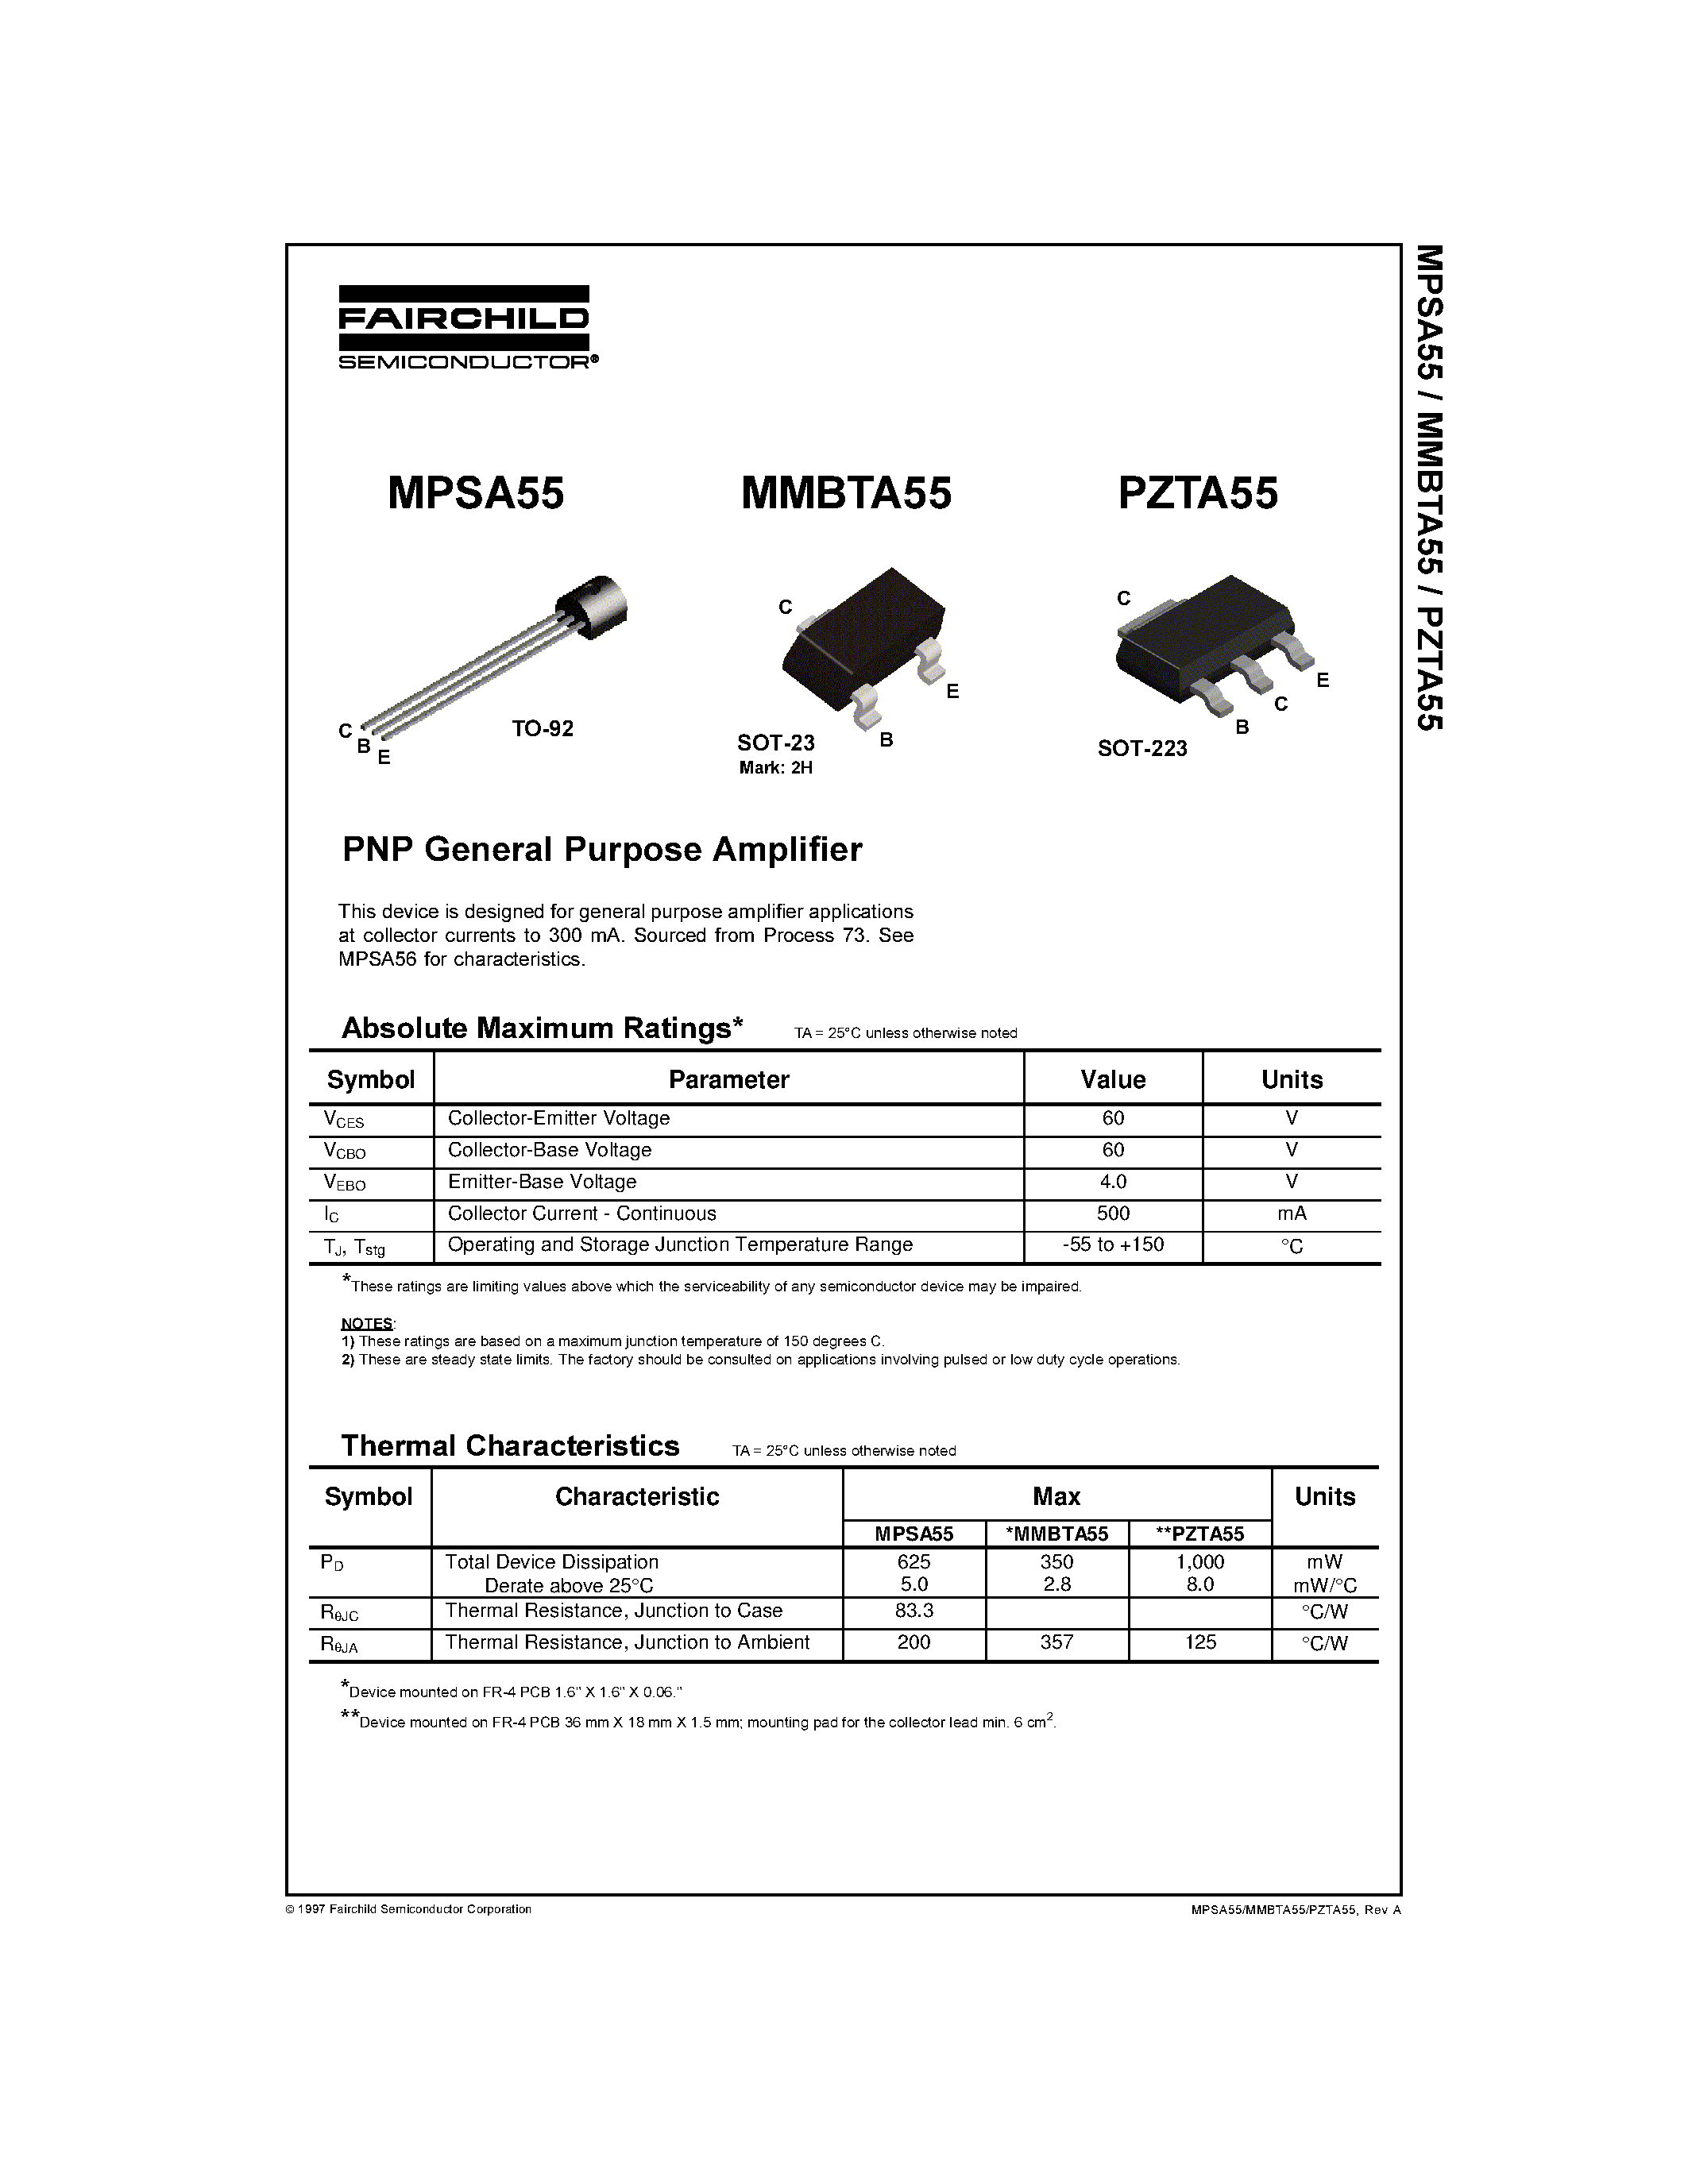 Datasheet PZTA55 - PNP General Purpose Amplifier page 1